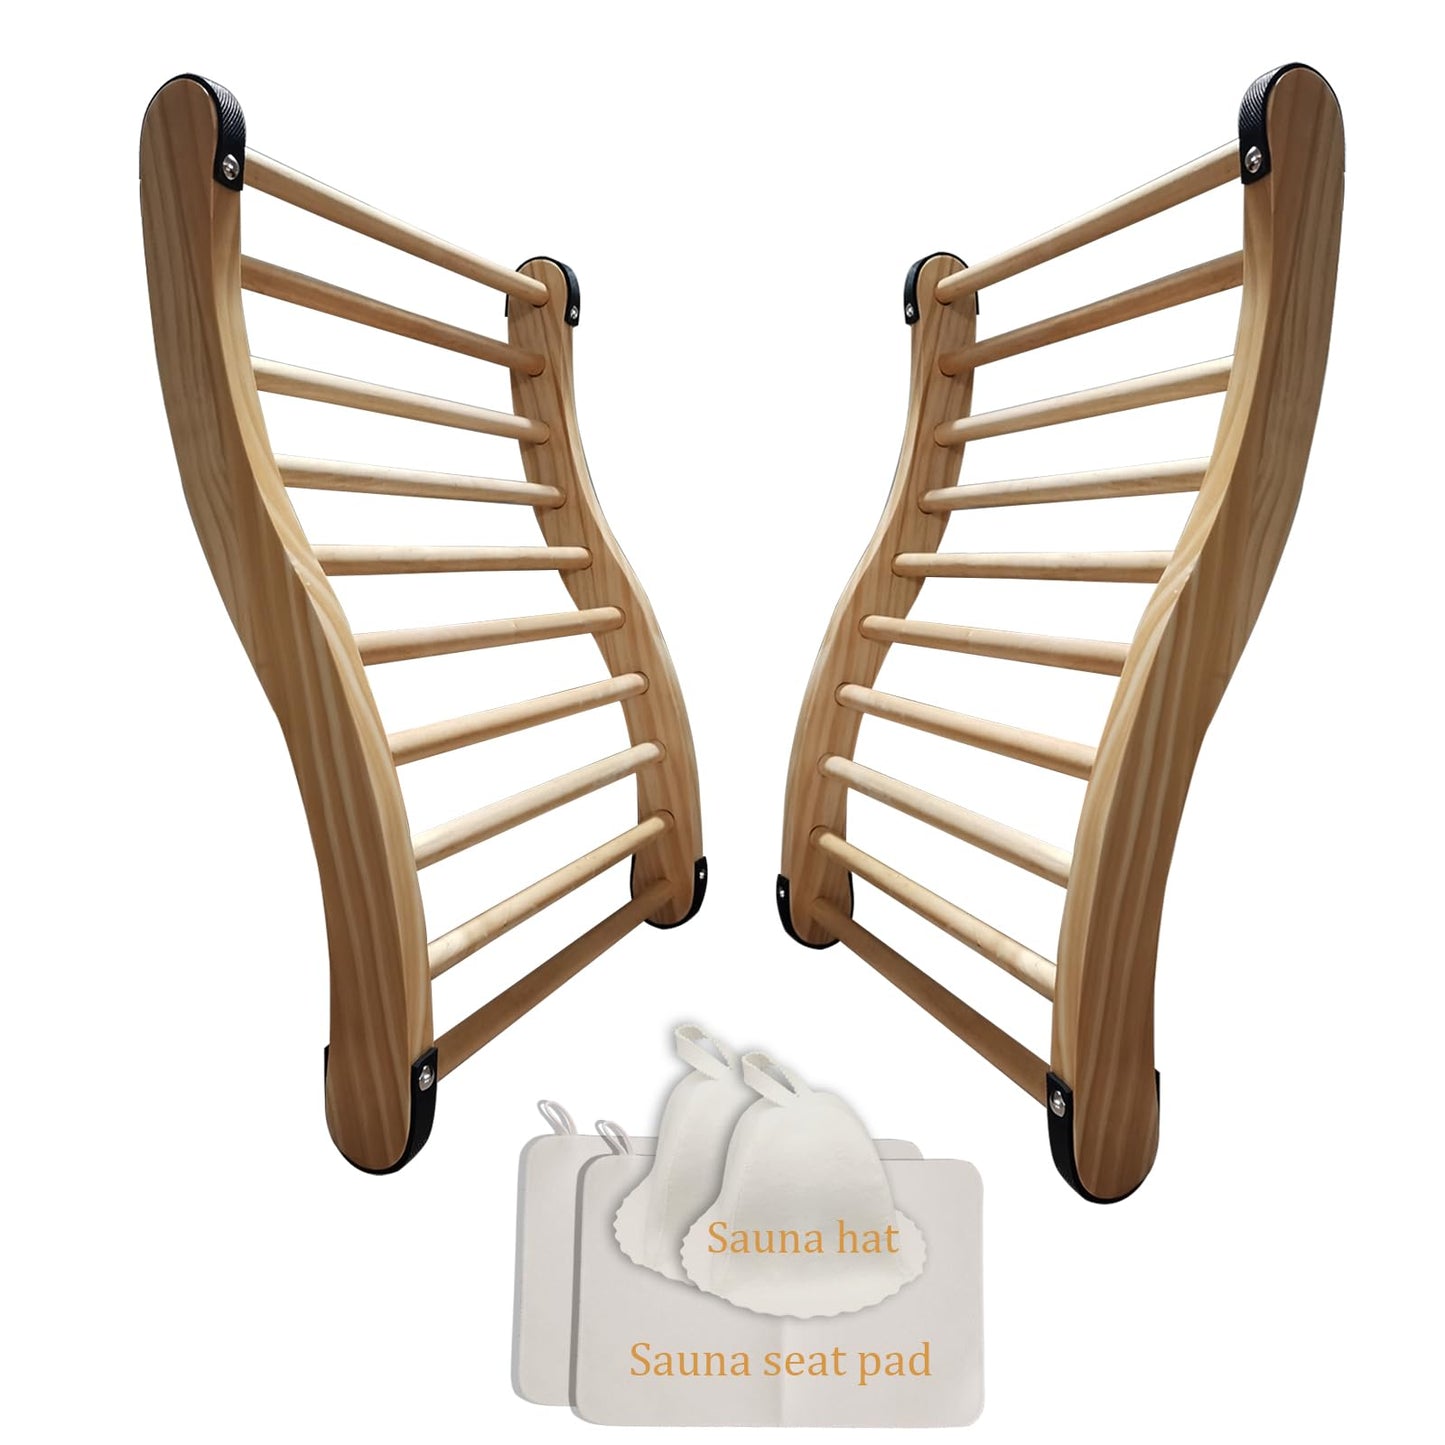 BESTNEWIE S-Shape Slip-Resistant Canadian Cedar Sauna Backrest Non-Toxic Sauna Backrest for Barrel or Infrared Sauna with Felt Sauna Hat and Seat Pad (2 Packs)